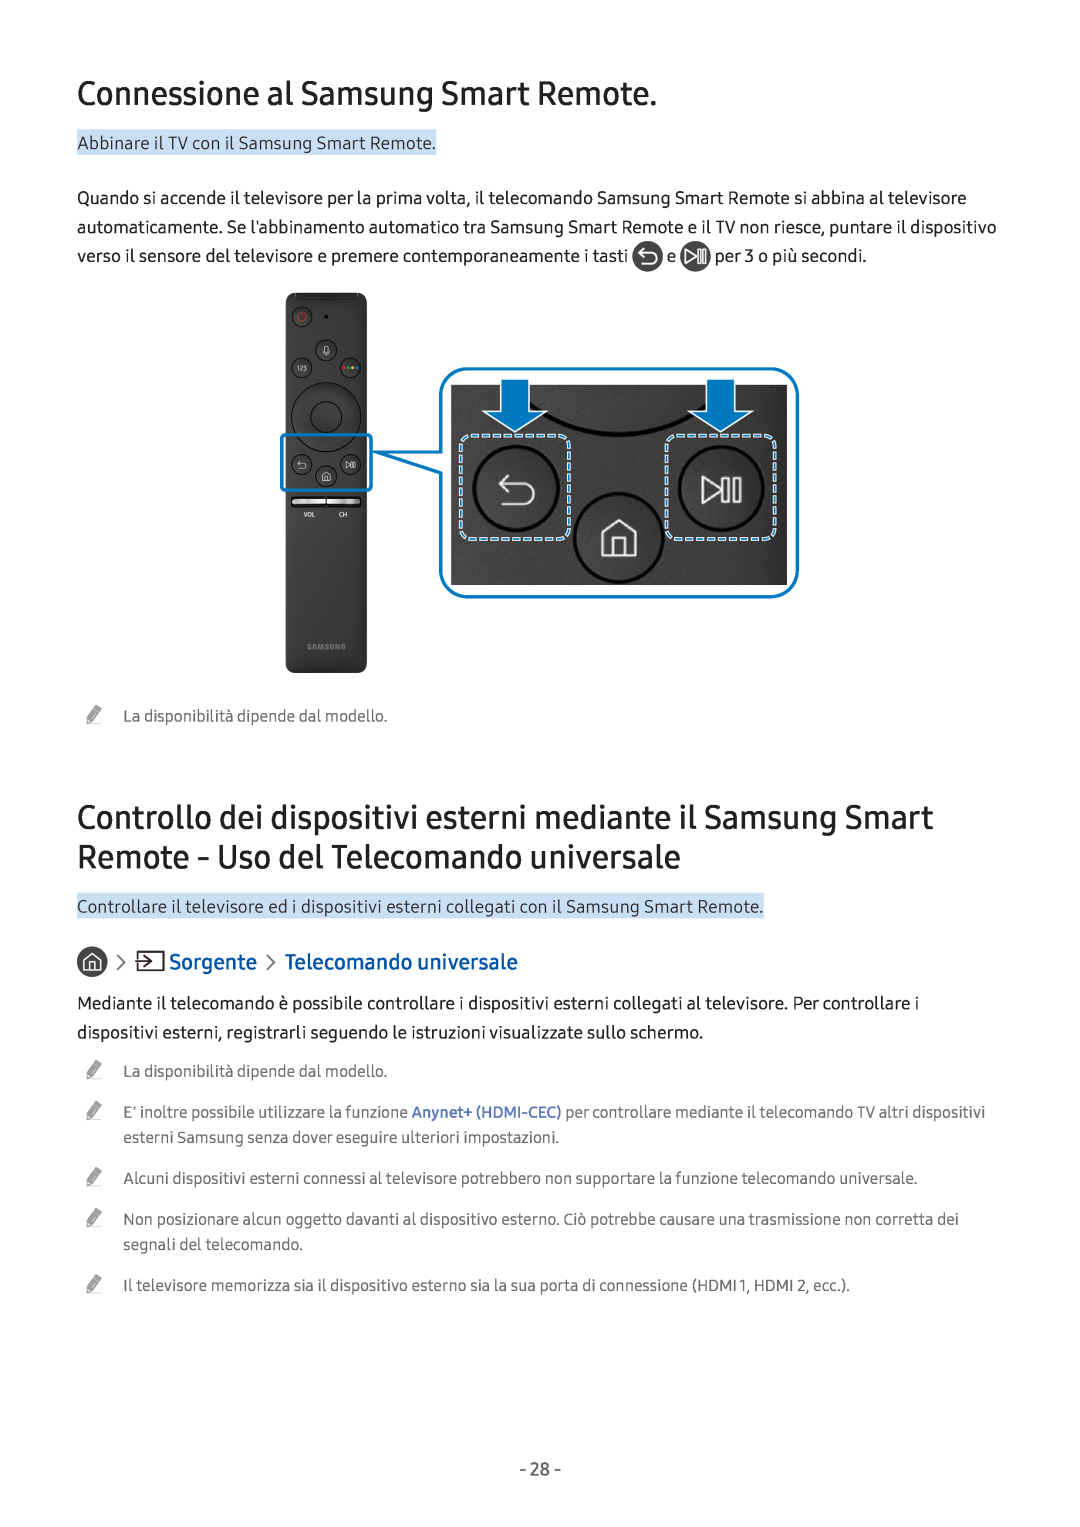 Samsung UE55M6302AKXXH, UE55M5570AUXZG, UE49M5580AUXZG Connessione al Samsung Smart Remote, Sorgente Telecomando universale 